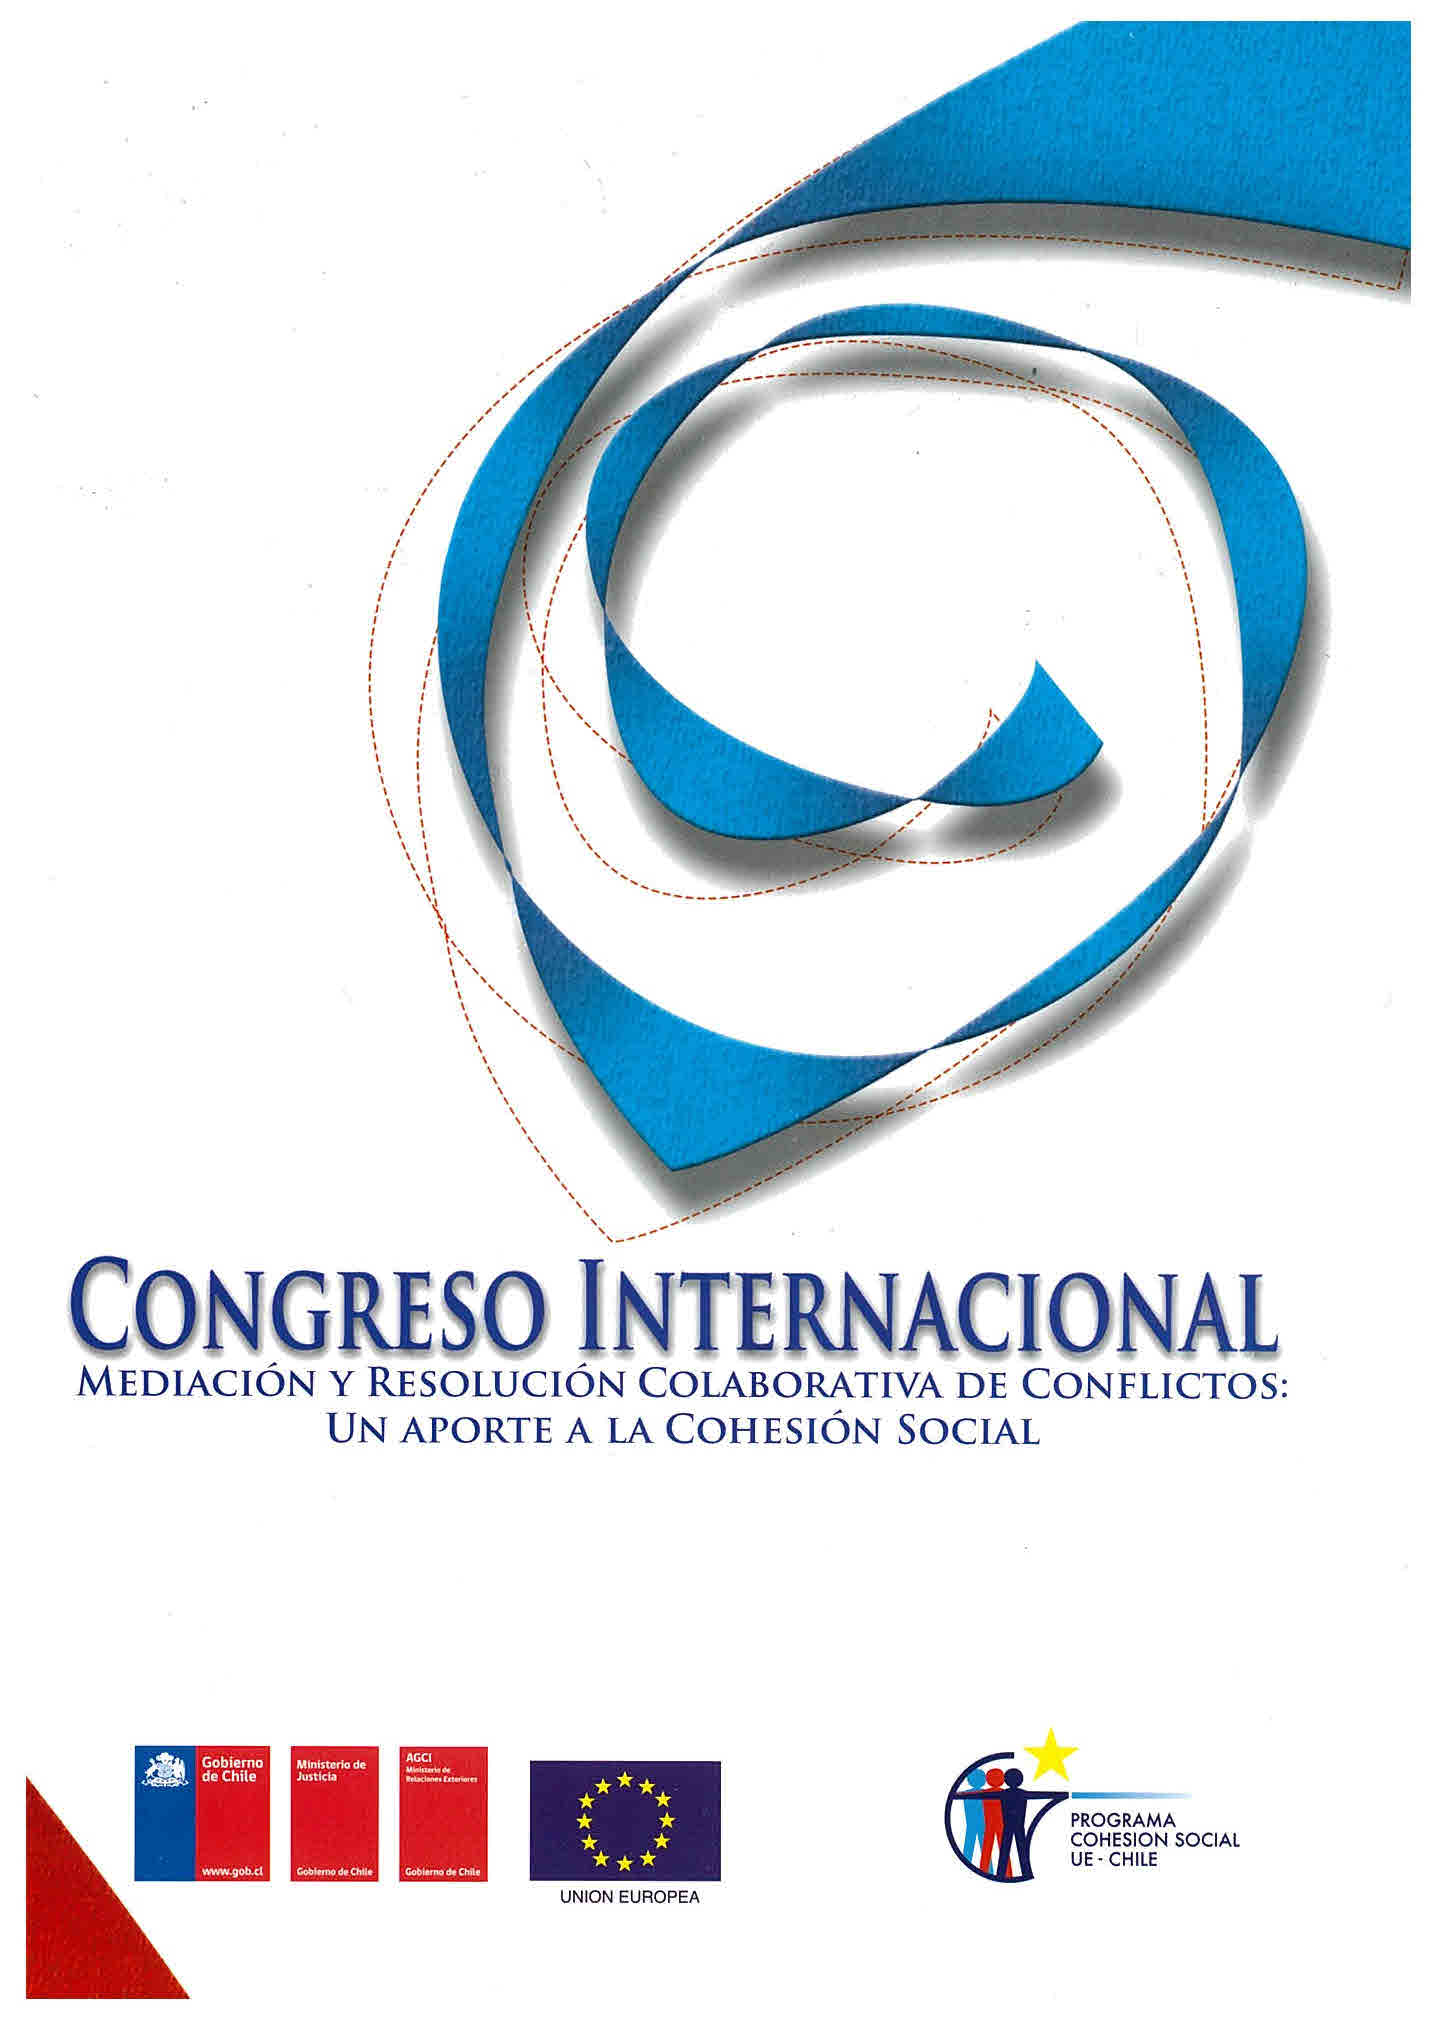 Congreso Internacional mediación y resolución colaborativa de conflictos: un aporte a la cohesión social